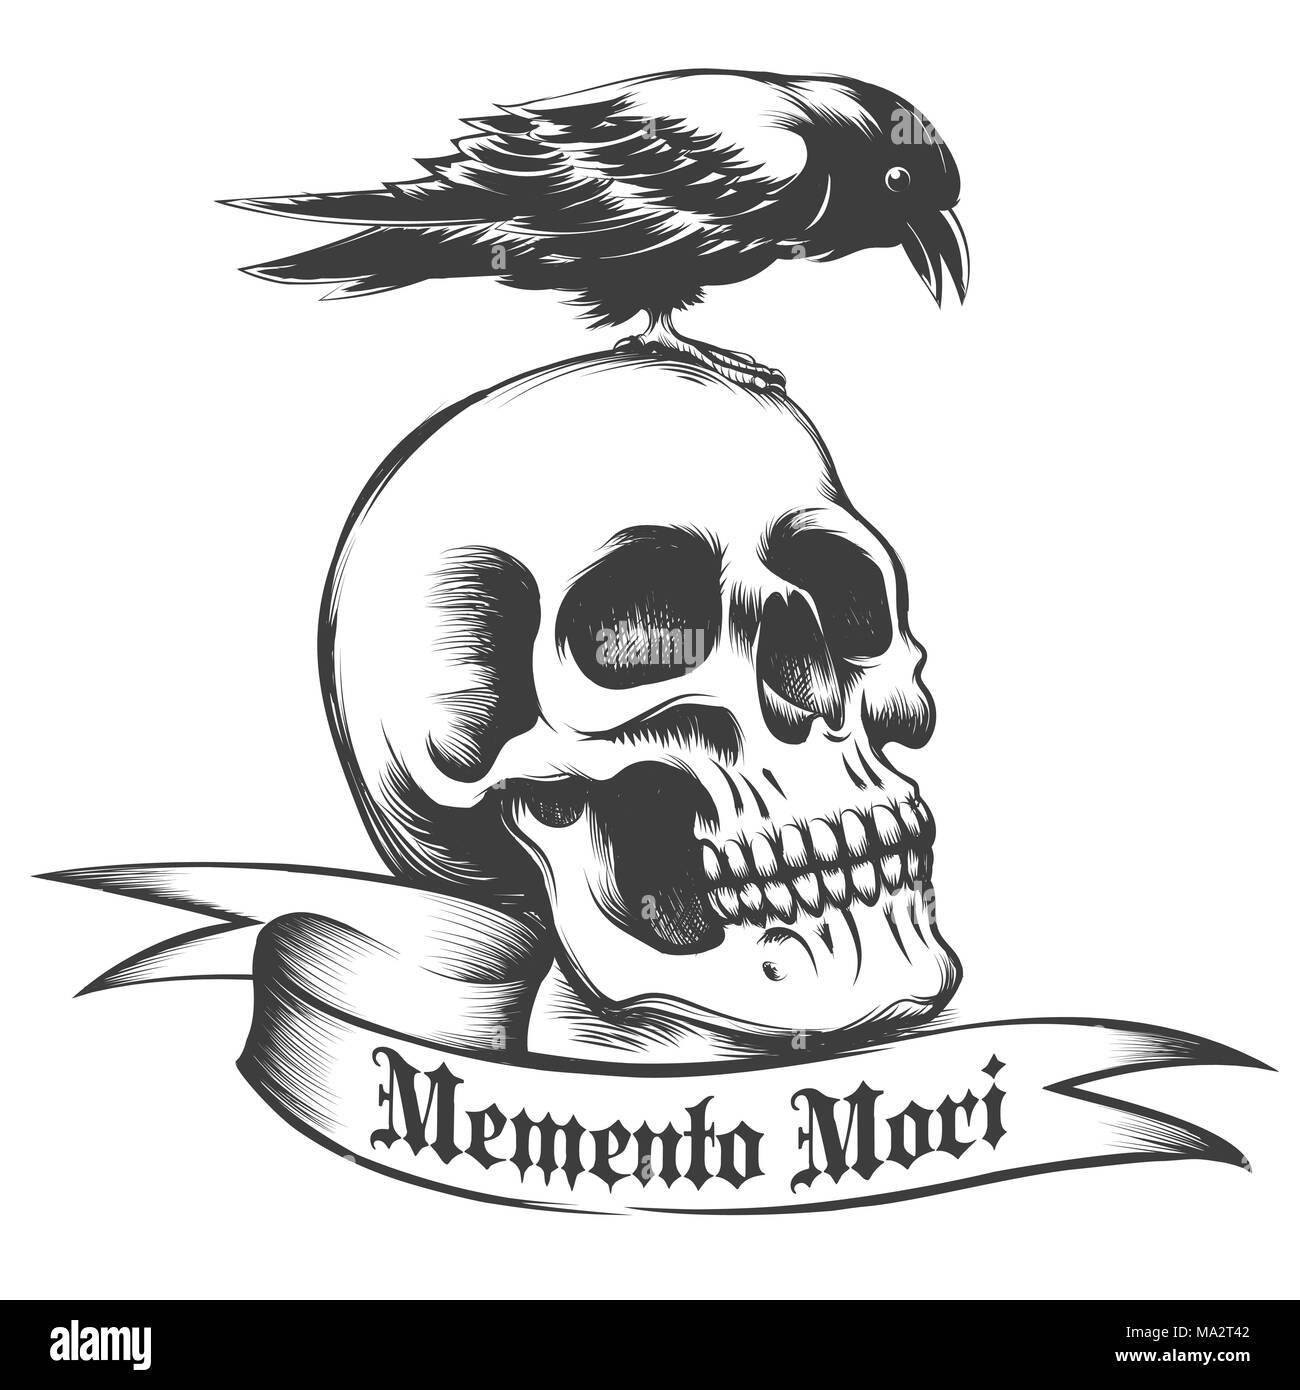 Hand Crow gezeichnet, die auf menschlichen Schädel und Band mit lateinischen Wortlaut Memento Mori, was es bedeutet, daran erinnern, was Sie haben, zu sterben auf Weiß isoliert. Vektor Stock Vektor